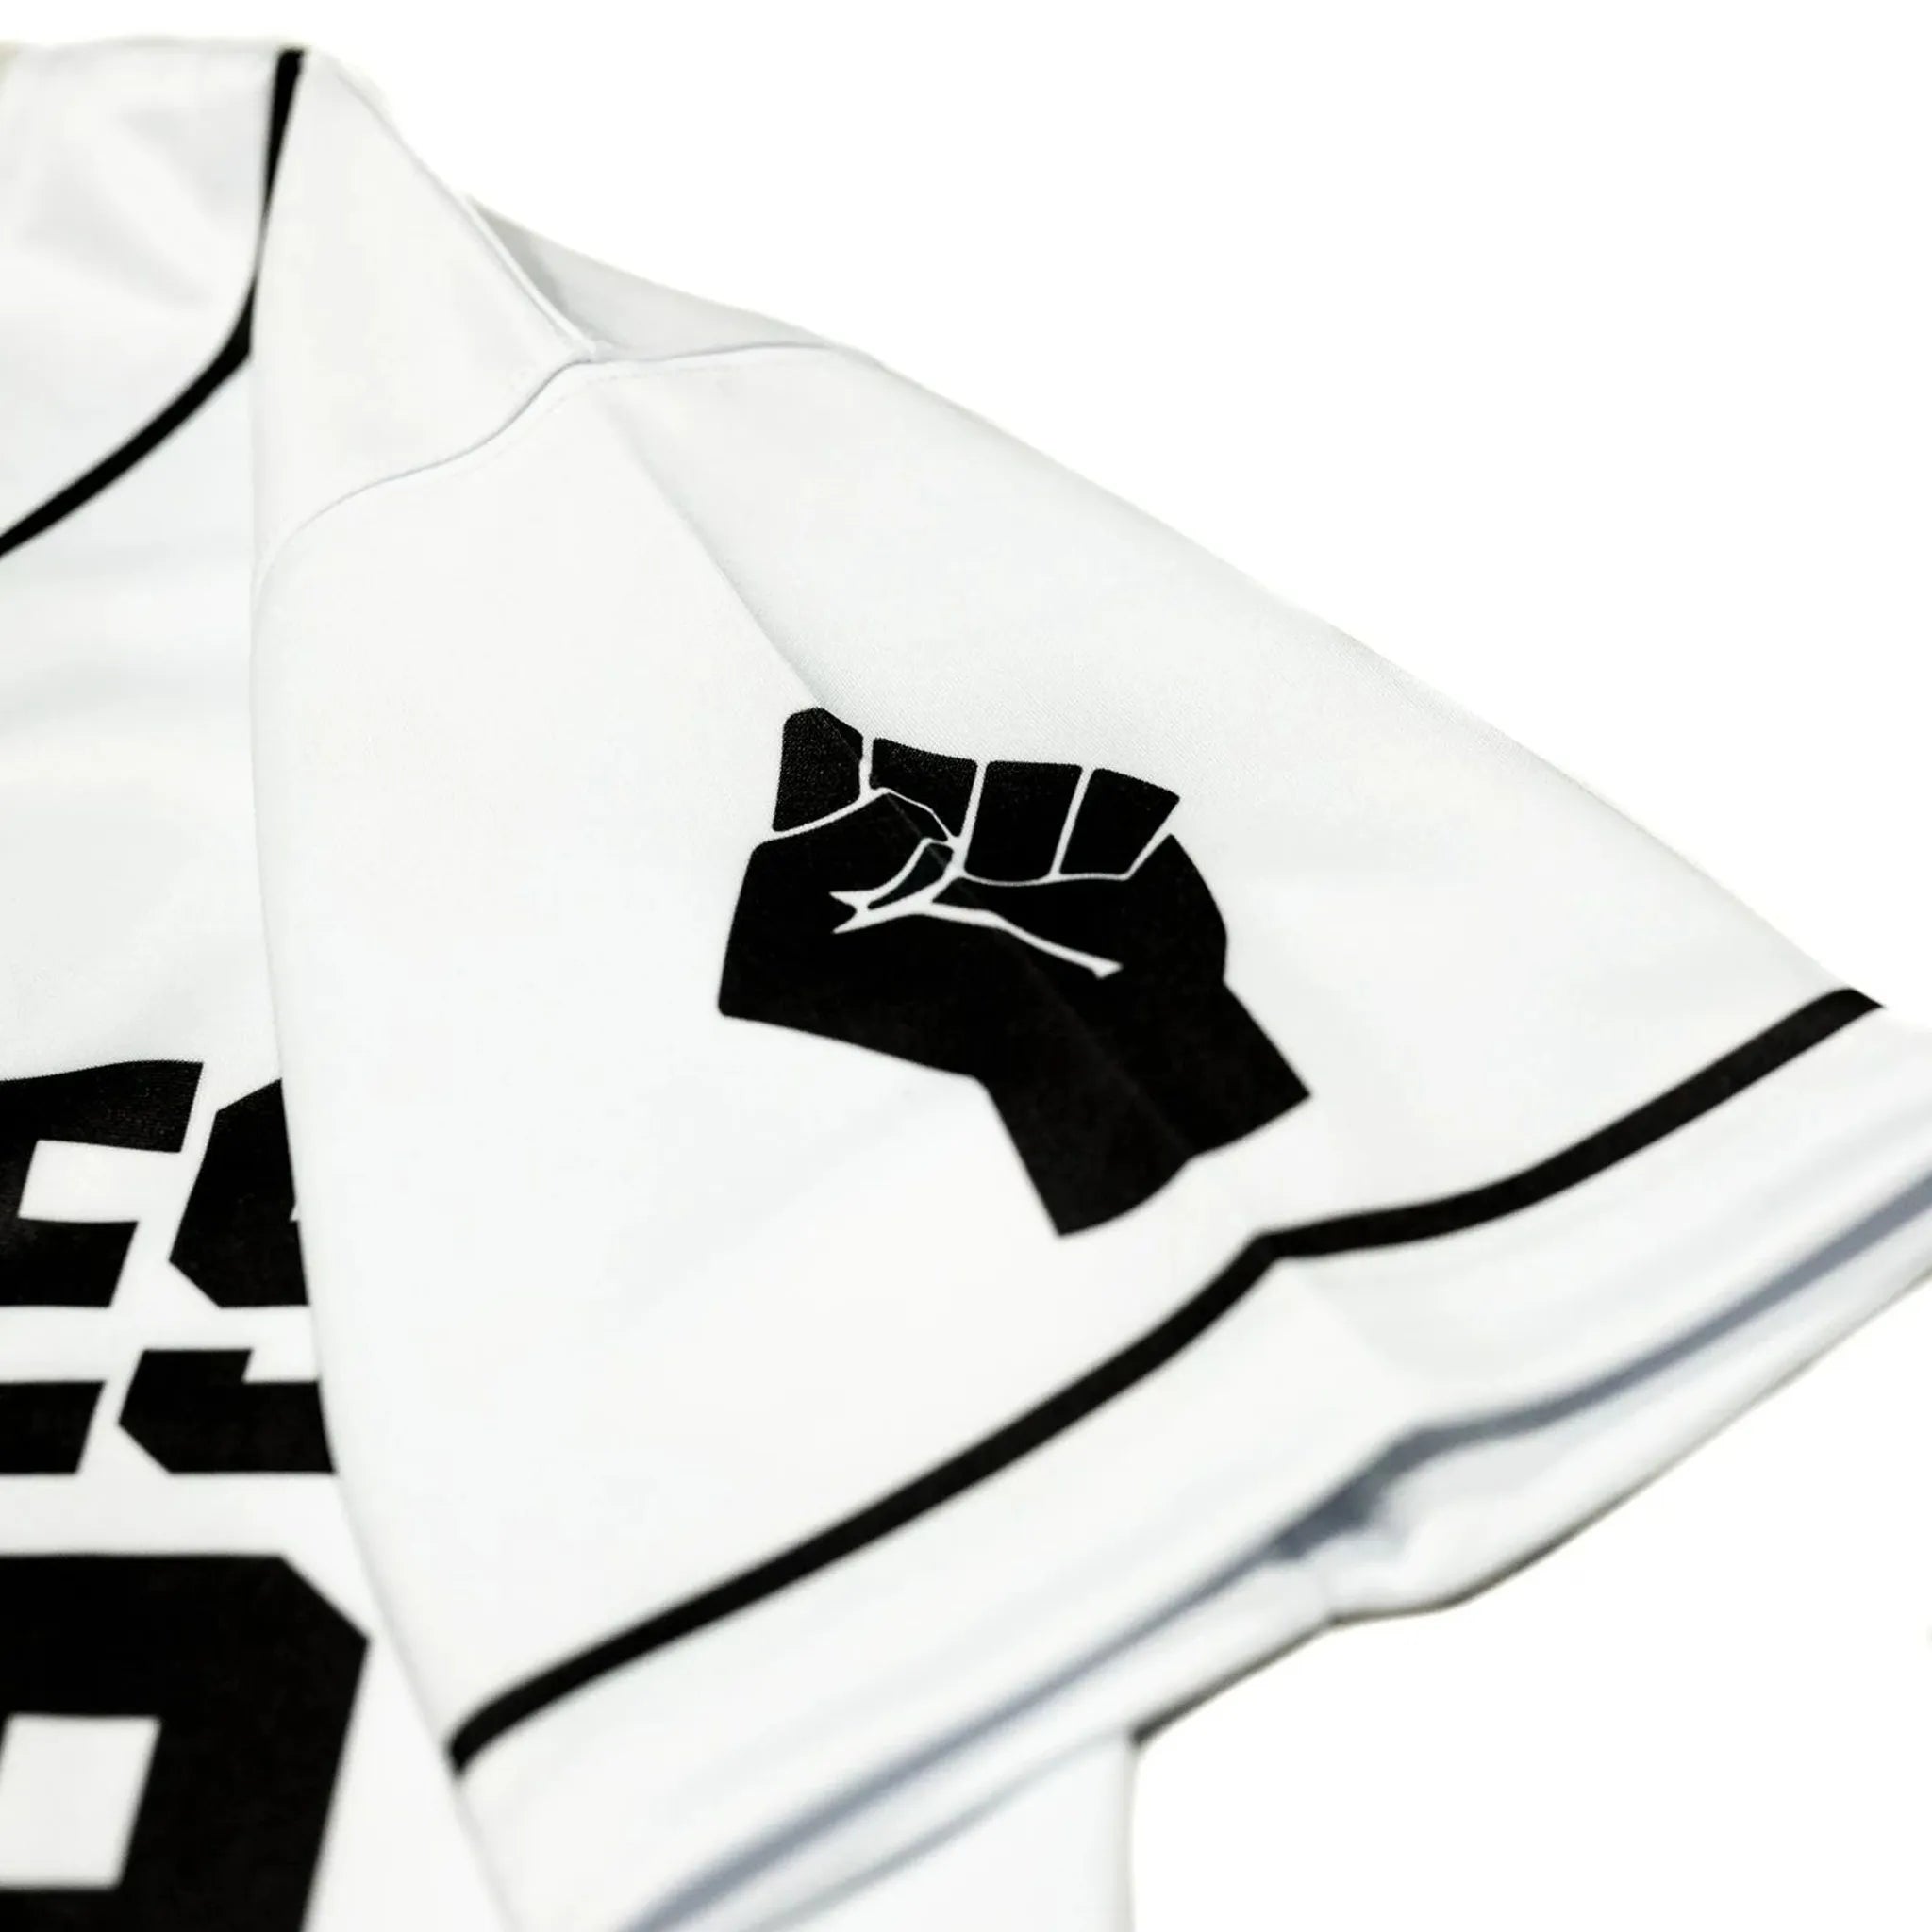 MIZIZ  Africa Baseball Jersey [Black] – MIZIZI